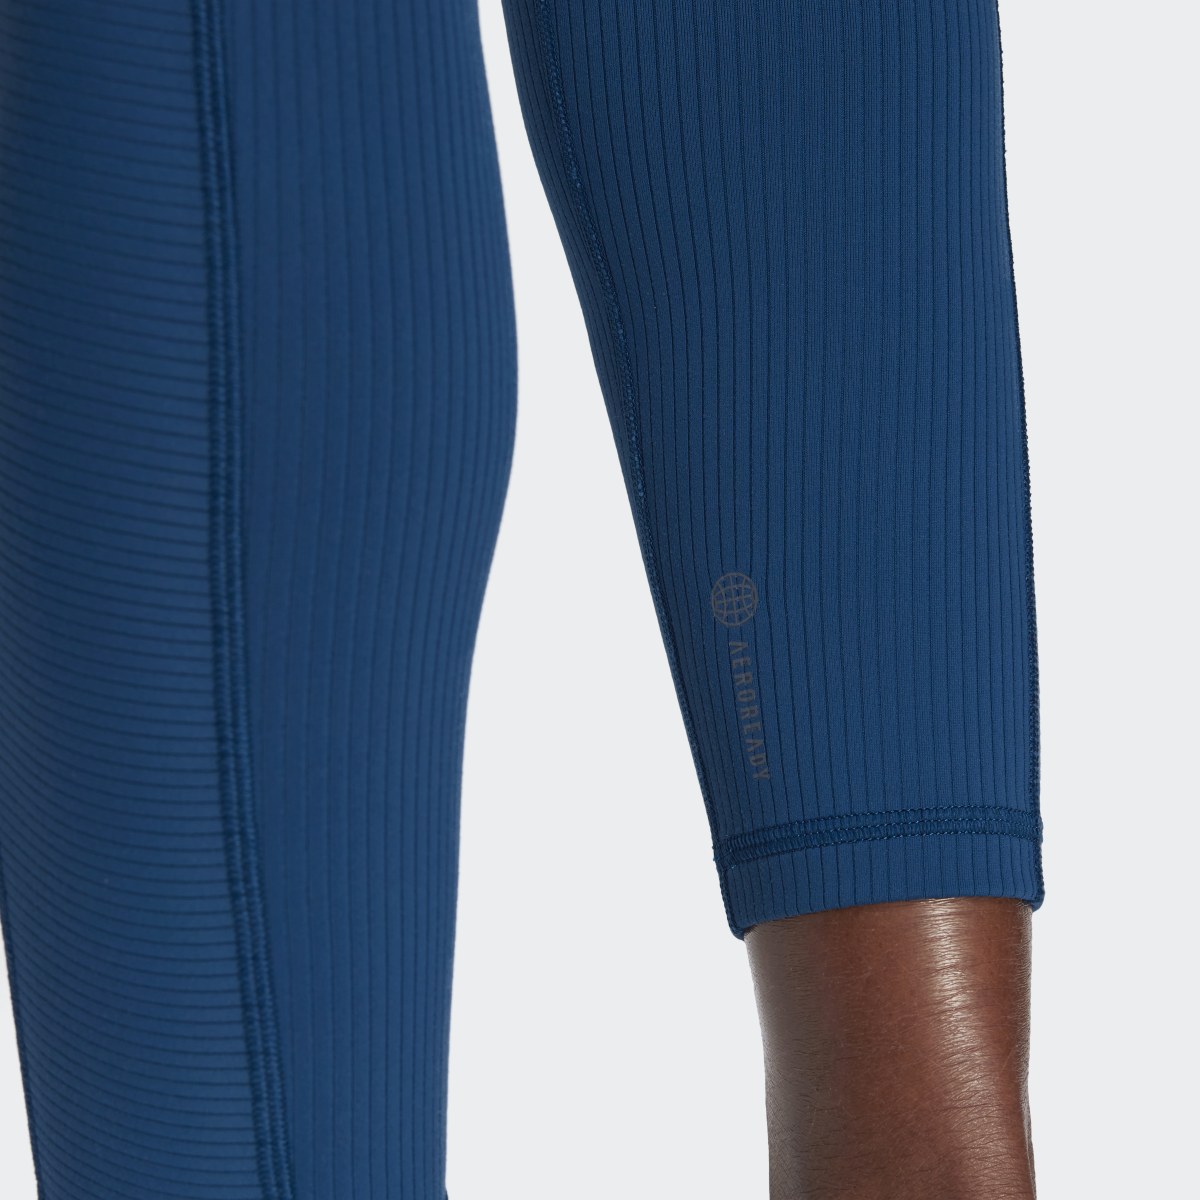 Adidas Leggings Caneladas com Cintura Supersubida para Ioga Luxe Wind. 8